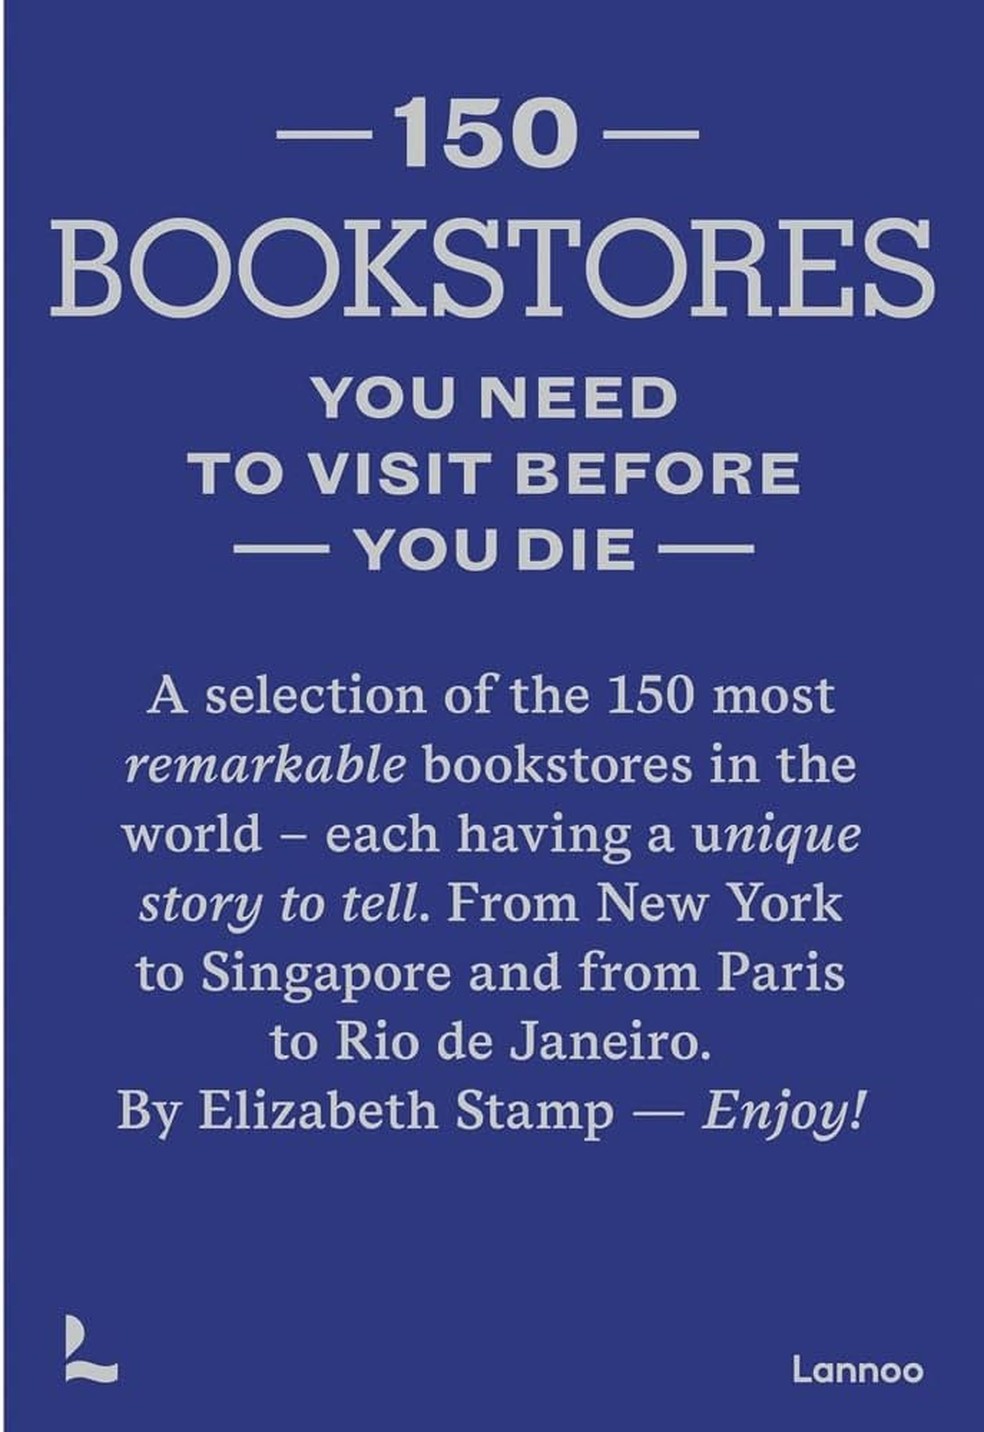 Livro 150 Bookstores You Need to Visit Before You Die foi publicado pela editora belga Lannoo Publishers em 2023 — Foto: Divulgação